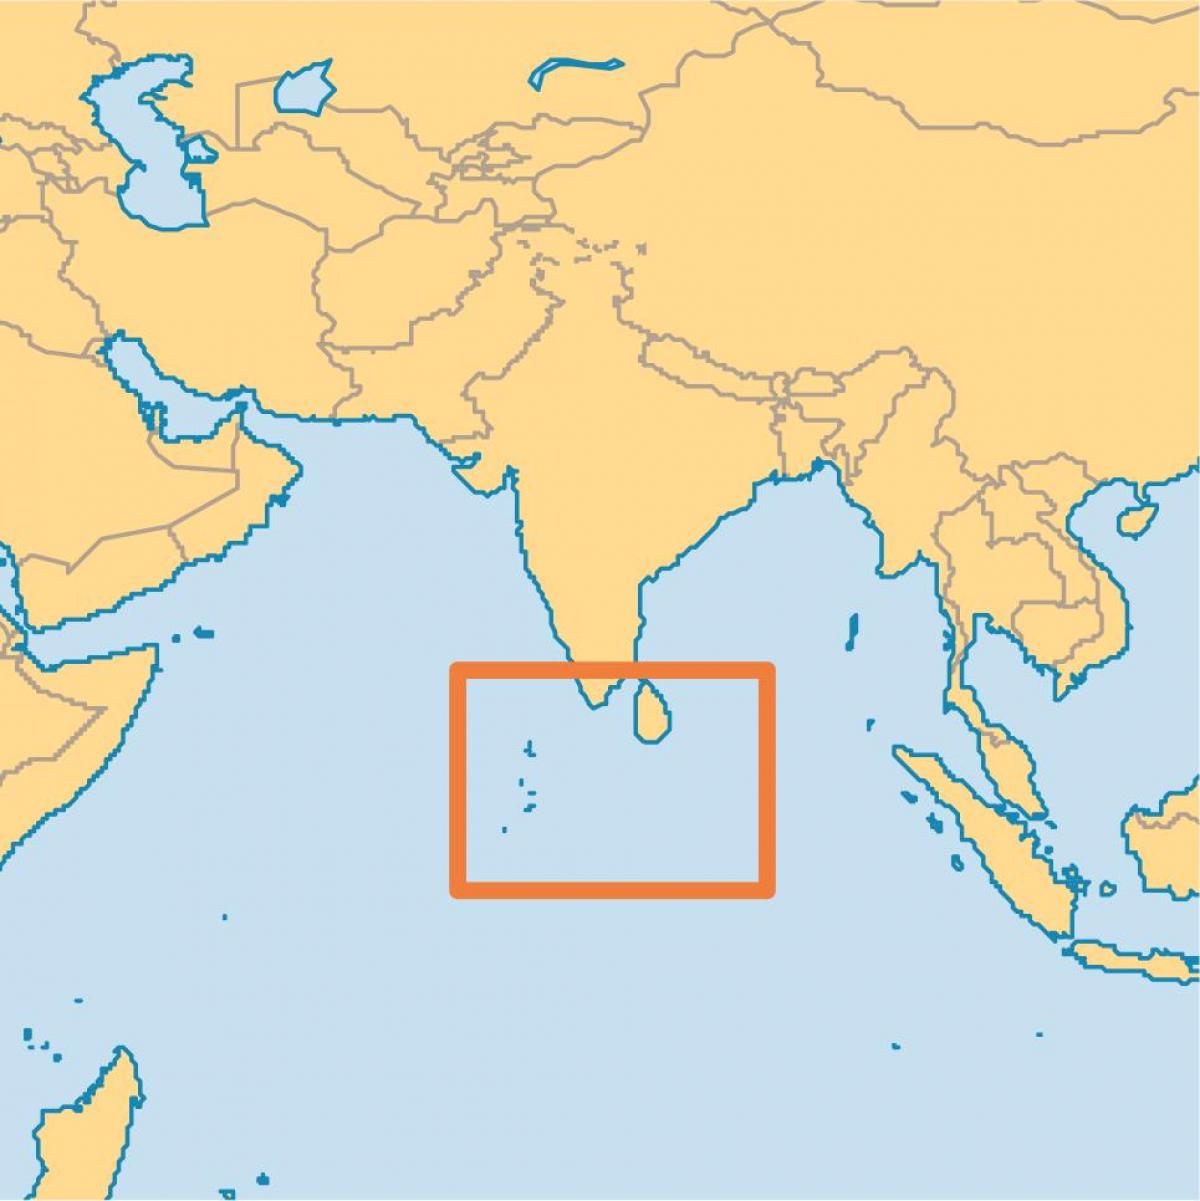 მალდივის კუნძული მდებარეობა მსოფლიო რუკა